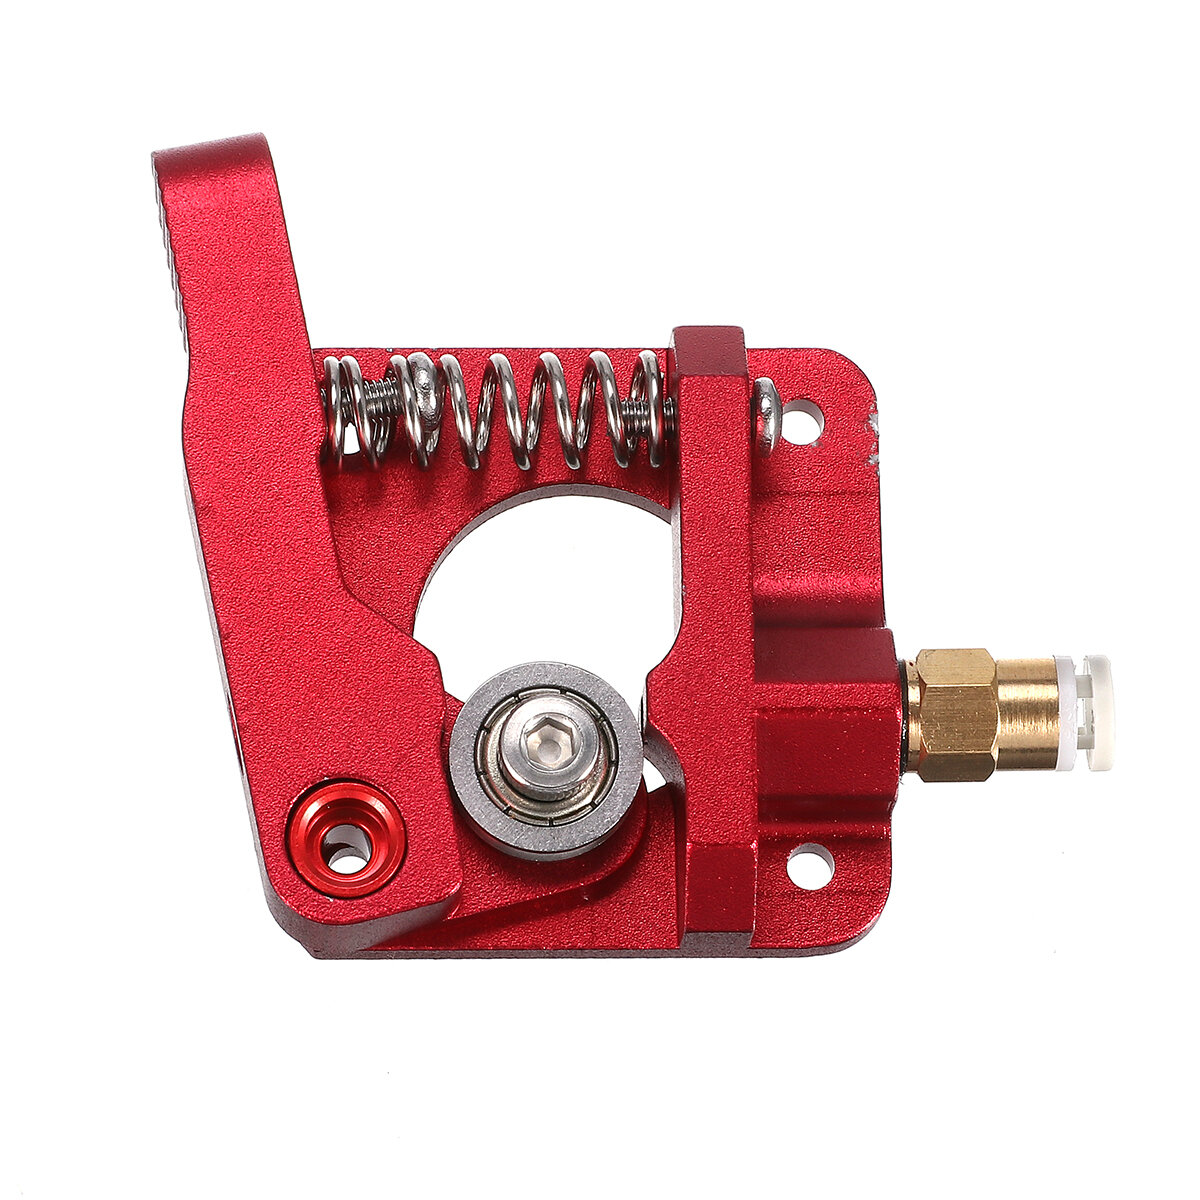 Red Metal Block Bowden Extruder Kit for Ender-3/Ender-3 Pro/Ender-3 V2/CR-10 Pro V2 3D Printer